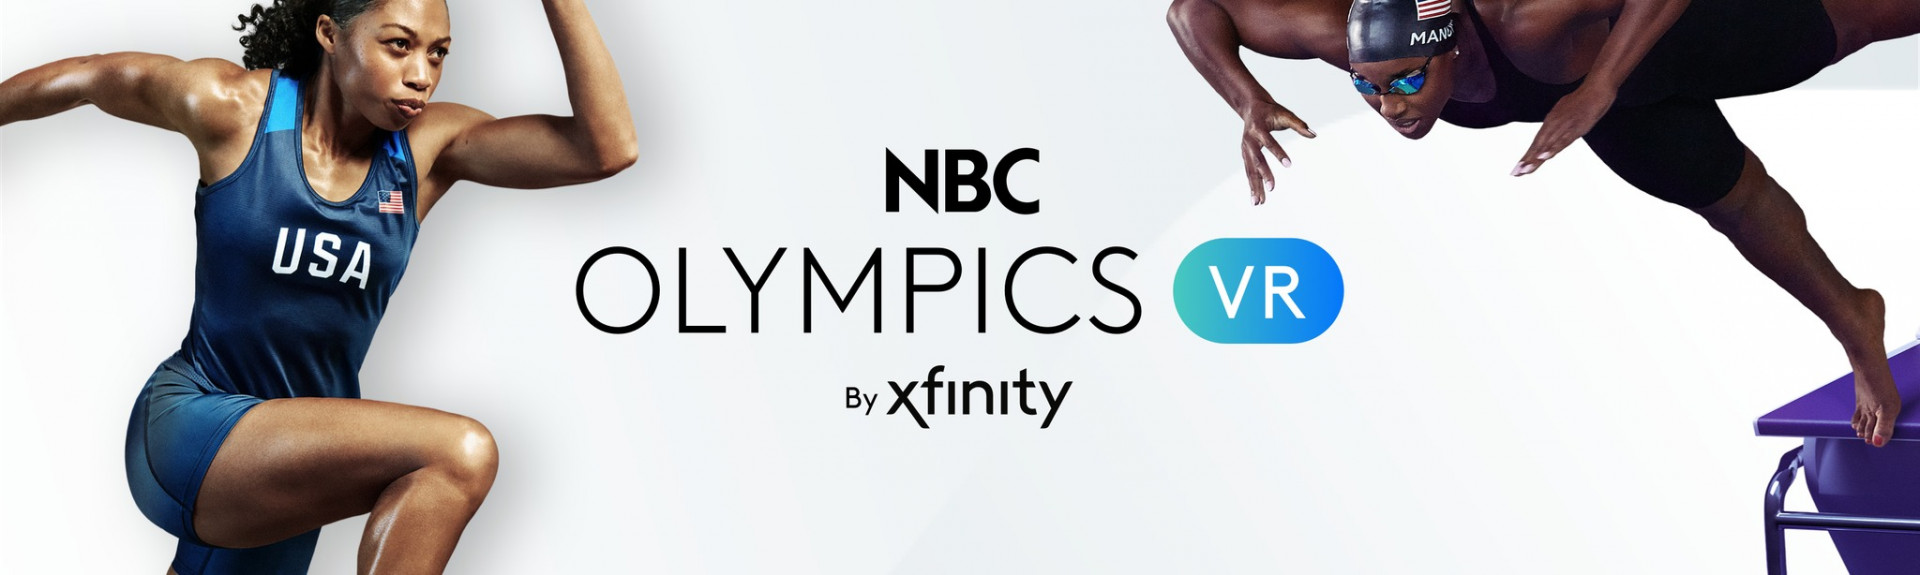 NBC Olympics VR by Xfinity